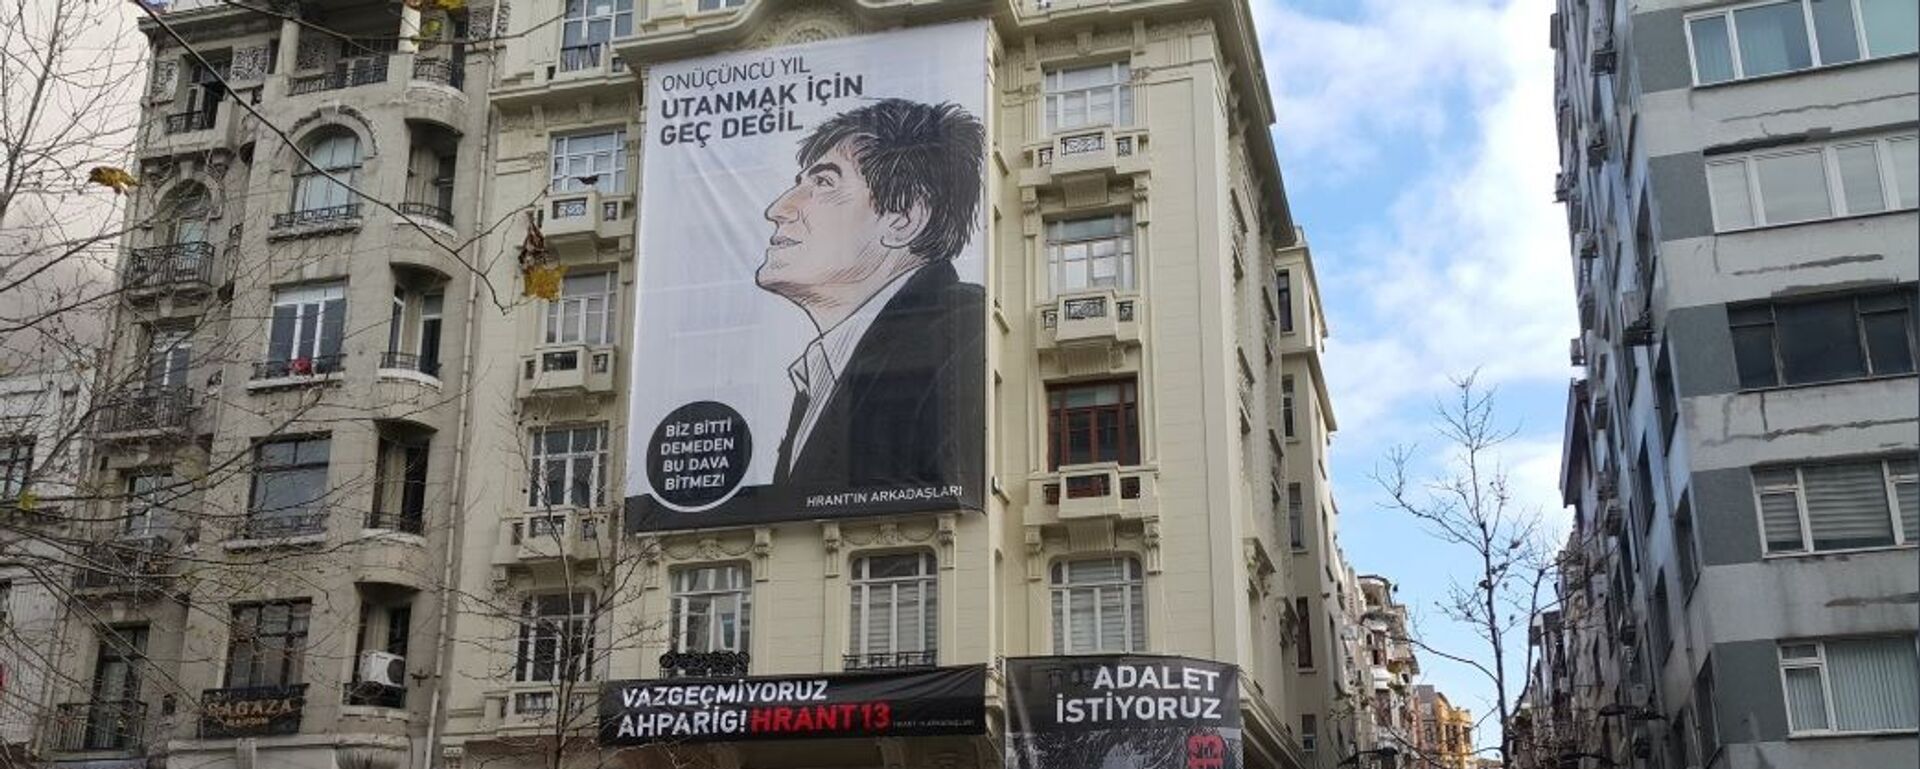 Gazeteci Hrant Dink öldürülüşünün 13’üncü yılında anıldı.  - Sputnik Türkiye, 1920, 14.06.2023